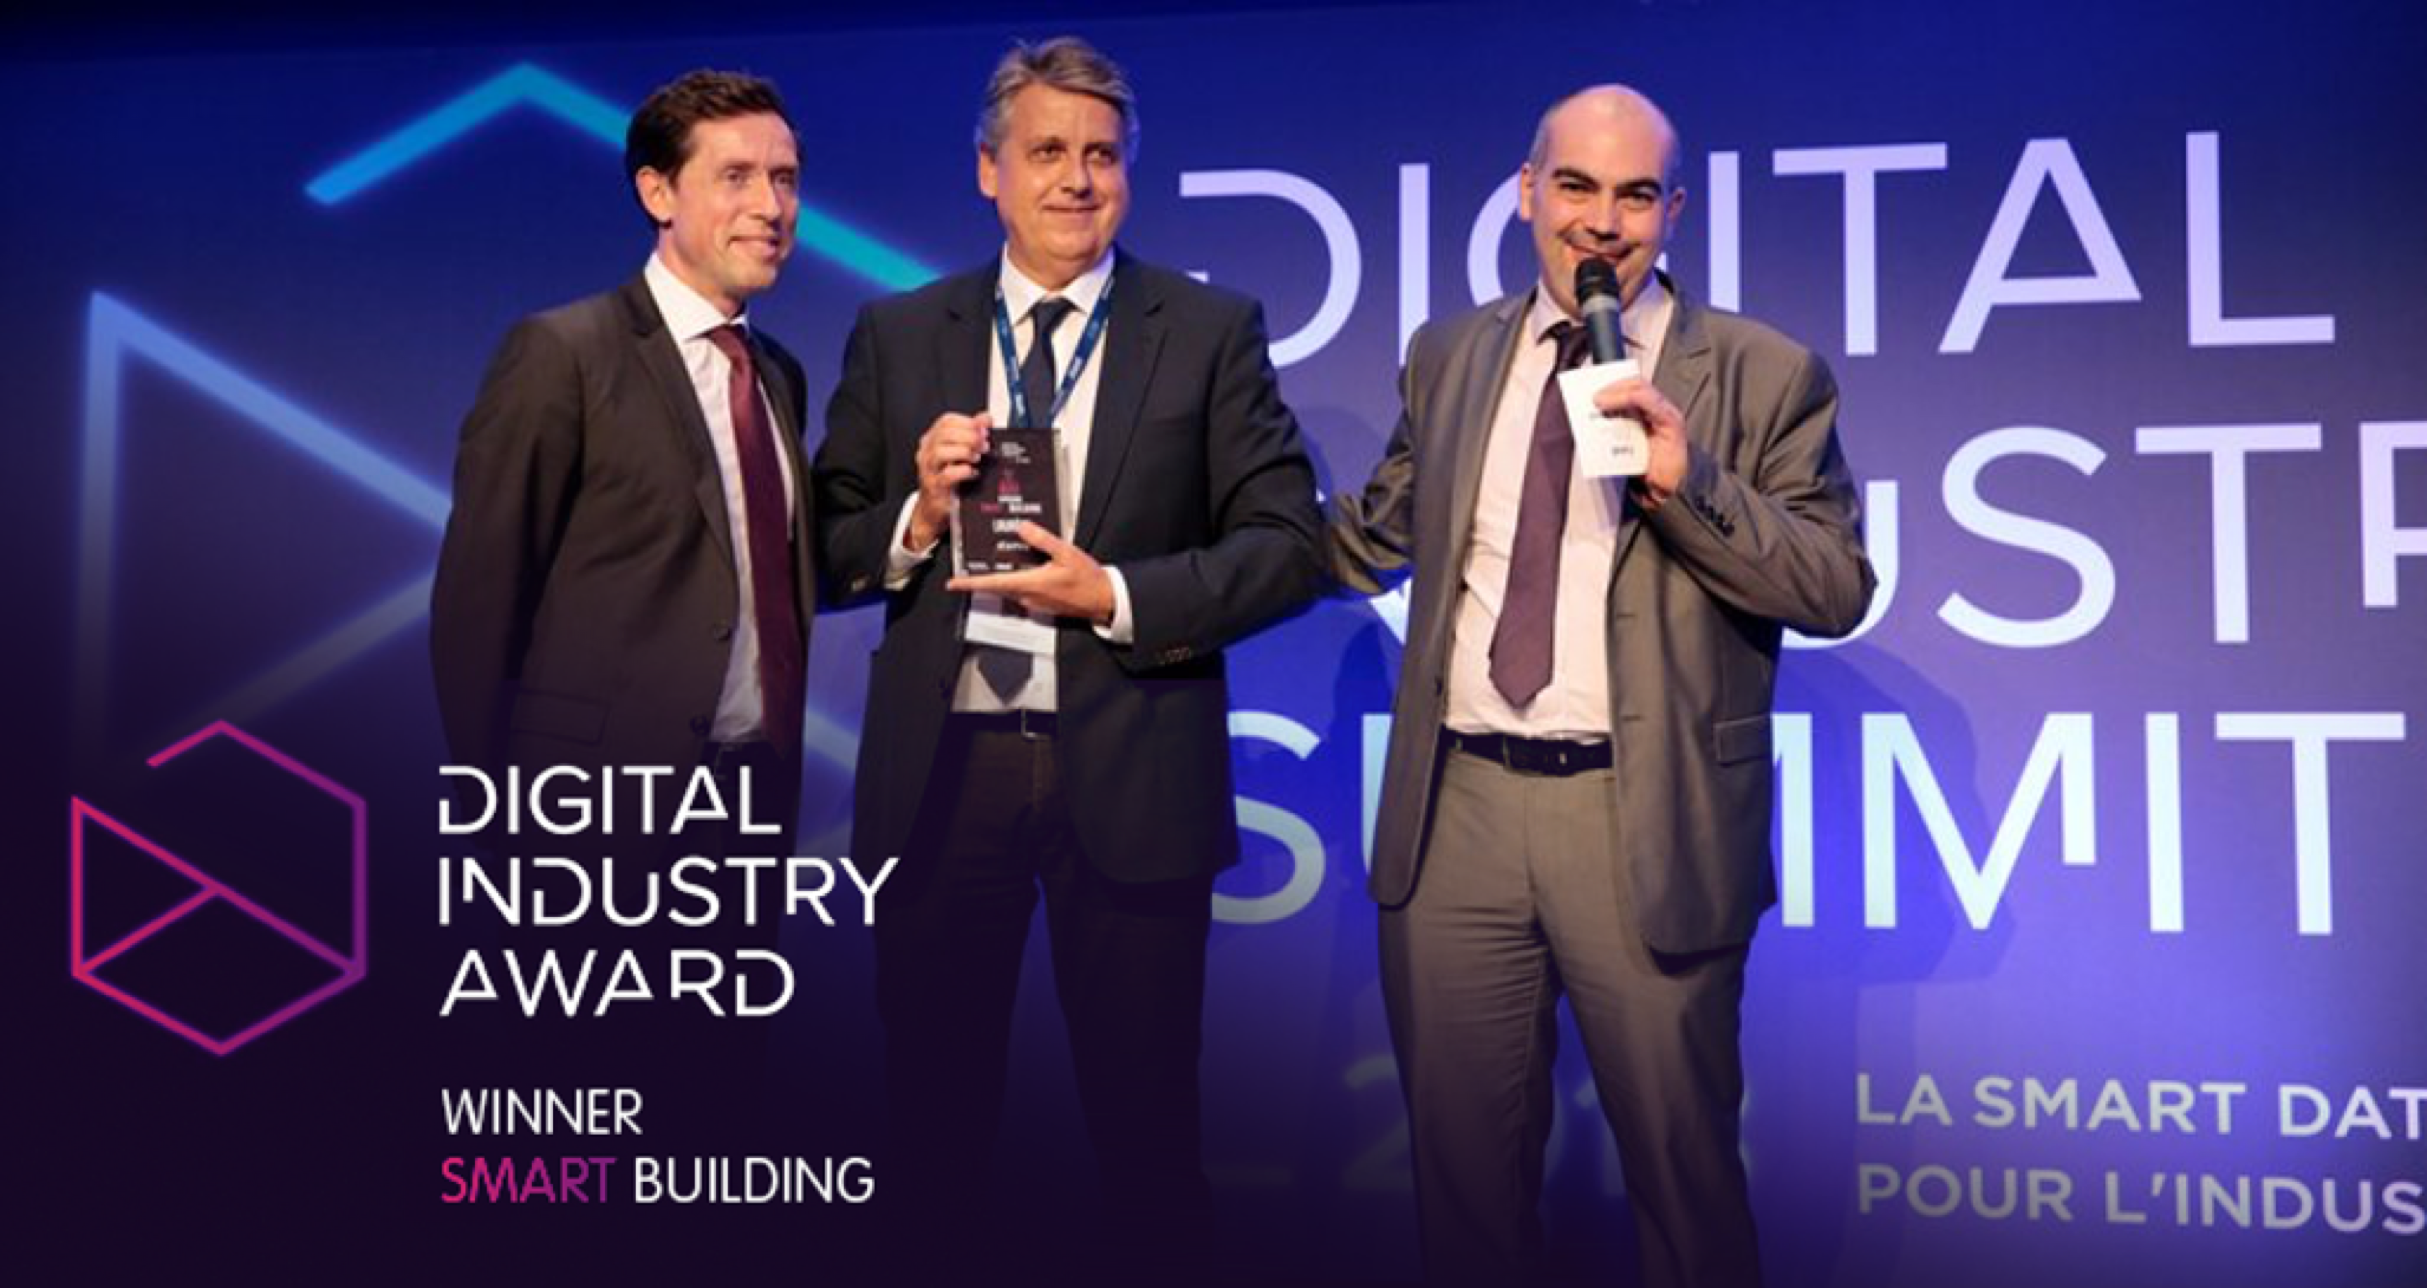 Digital Industry Award